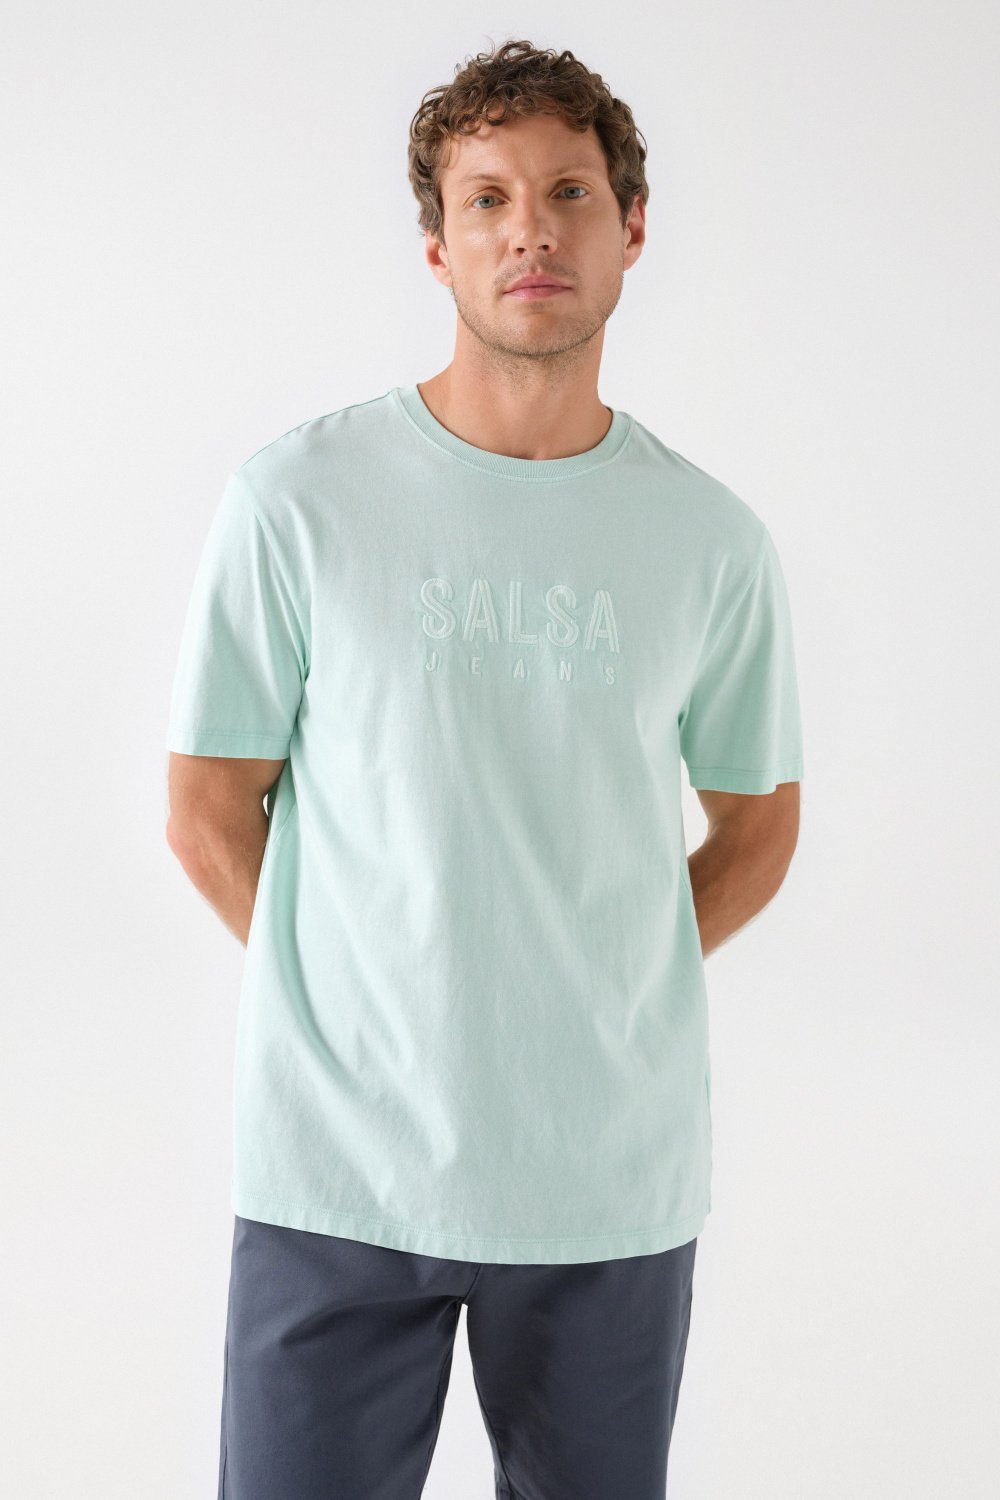 COTTON T-SHIRT WITH SALSA LOGO - Salsa